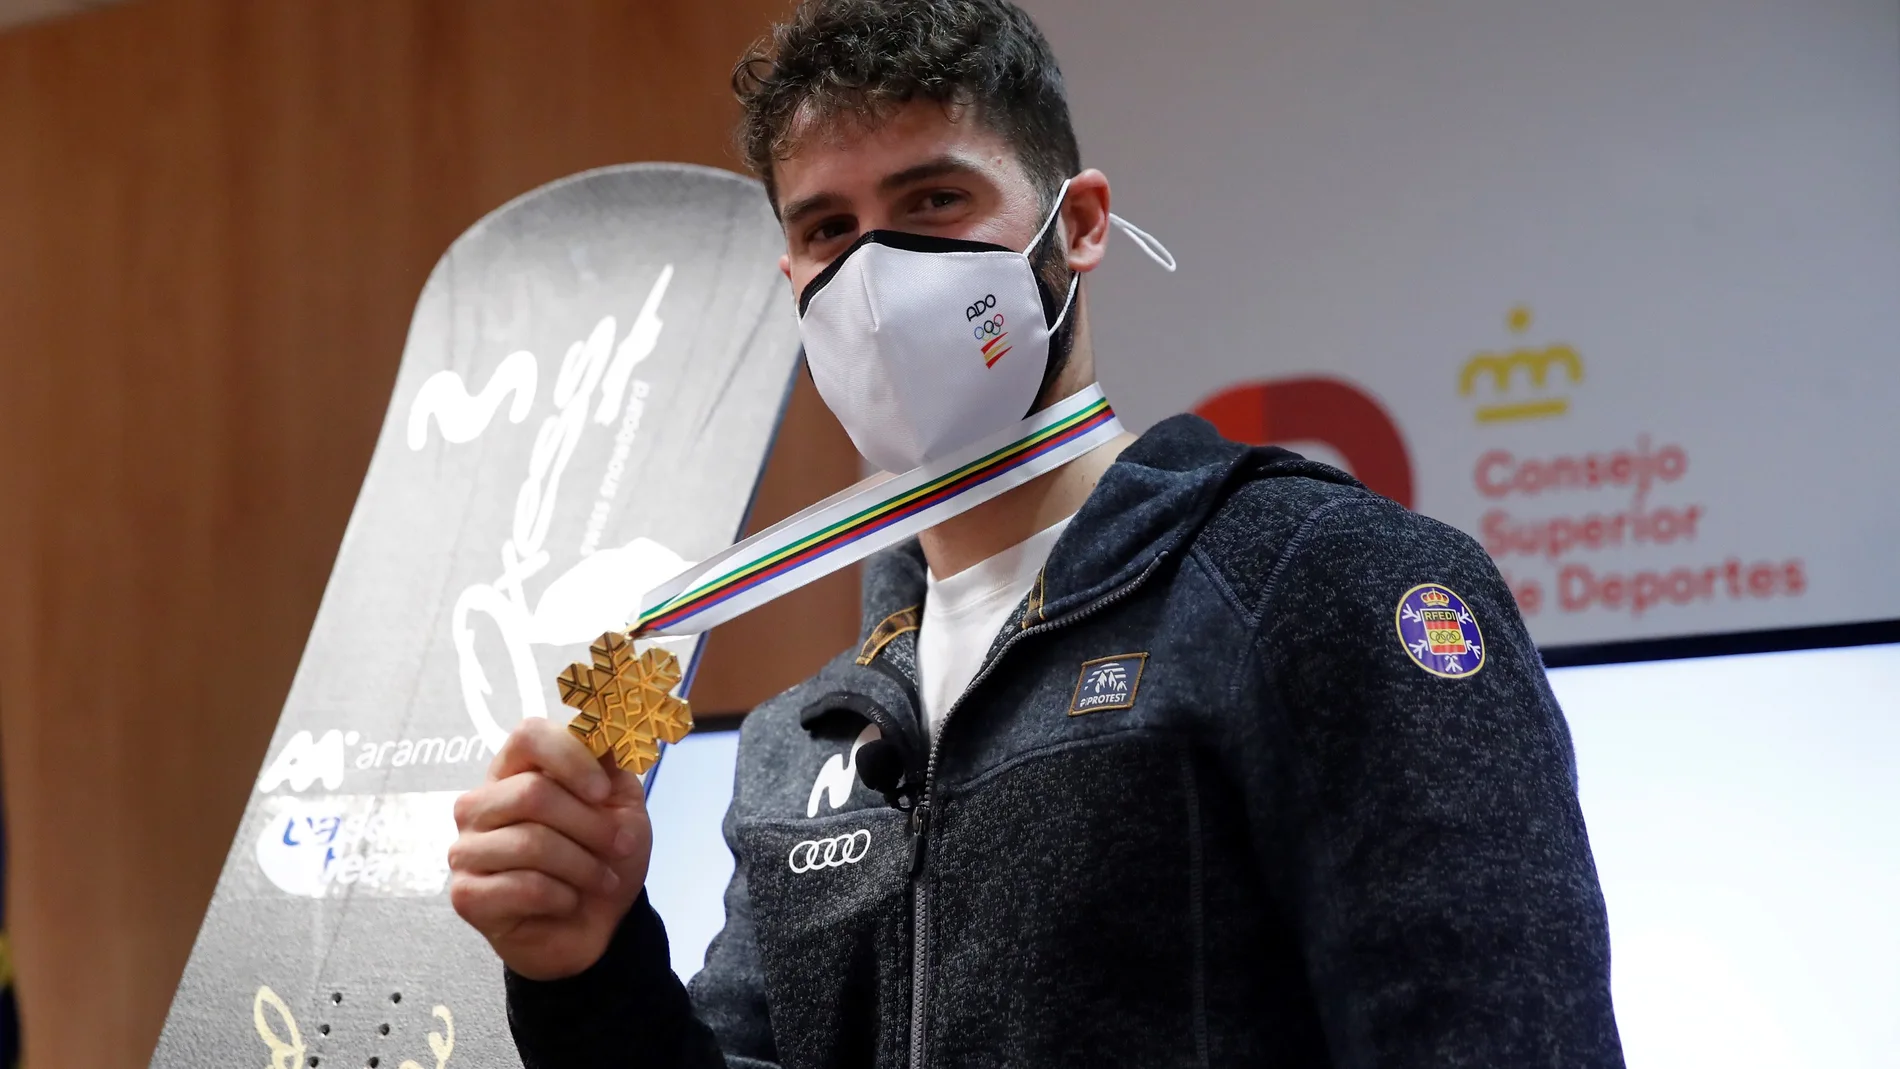 Lucas Eguibar muestra la medalla de oro que logró en el Mundial durante el recibimiento que le hicieron en la sede del CSD